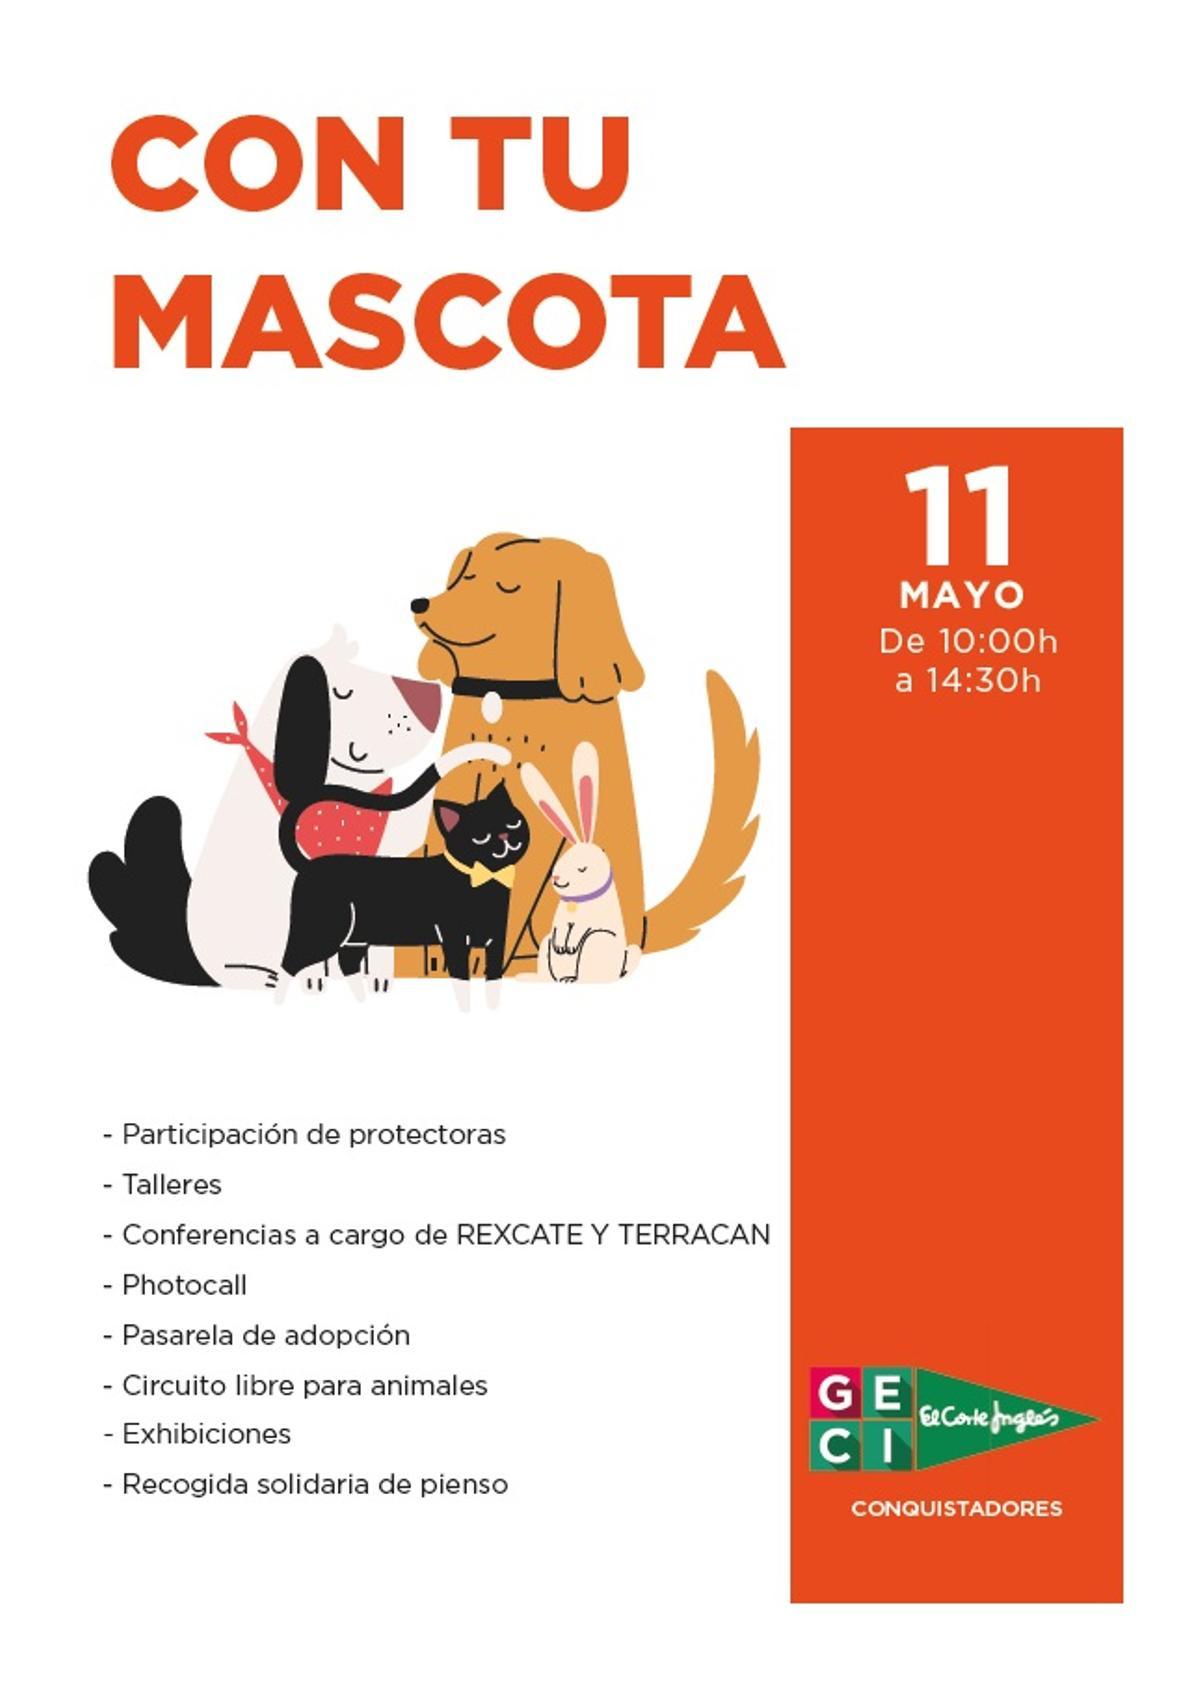 Cartel anunciador de 'Con tu mascota'